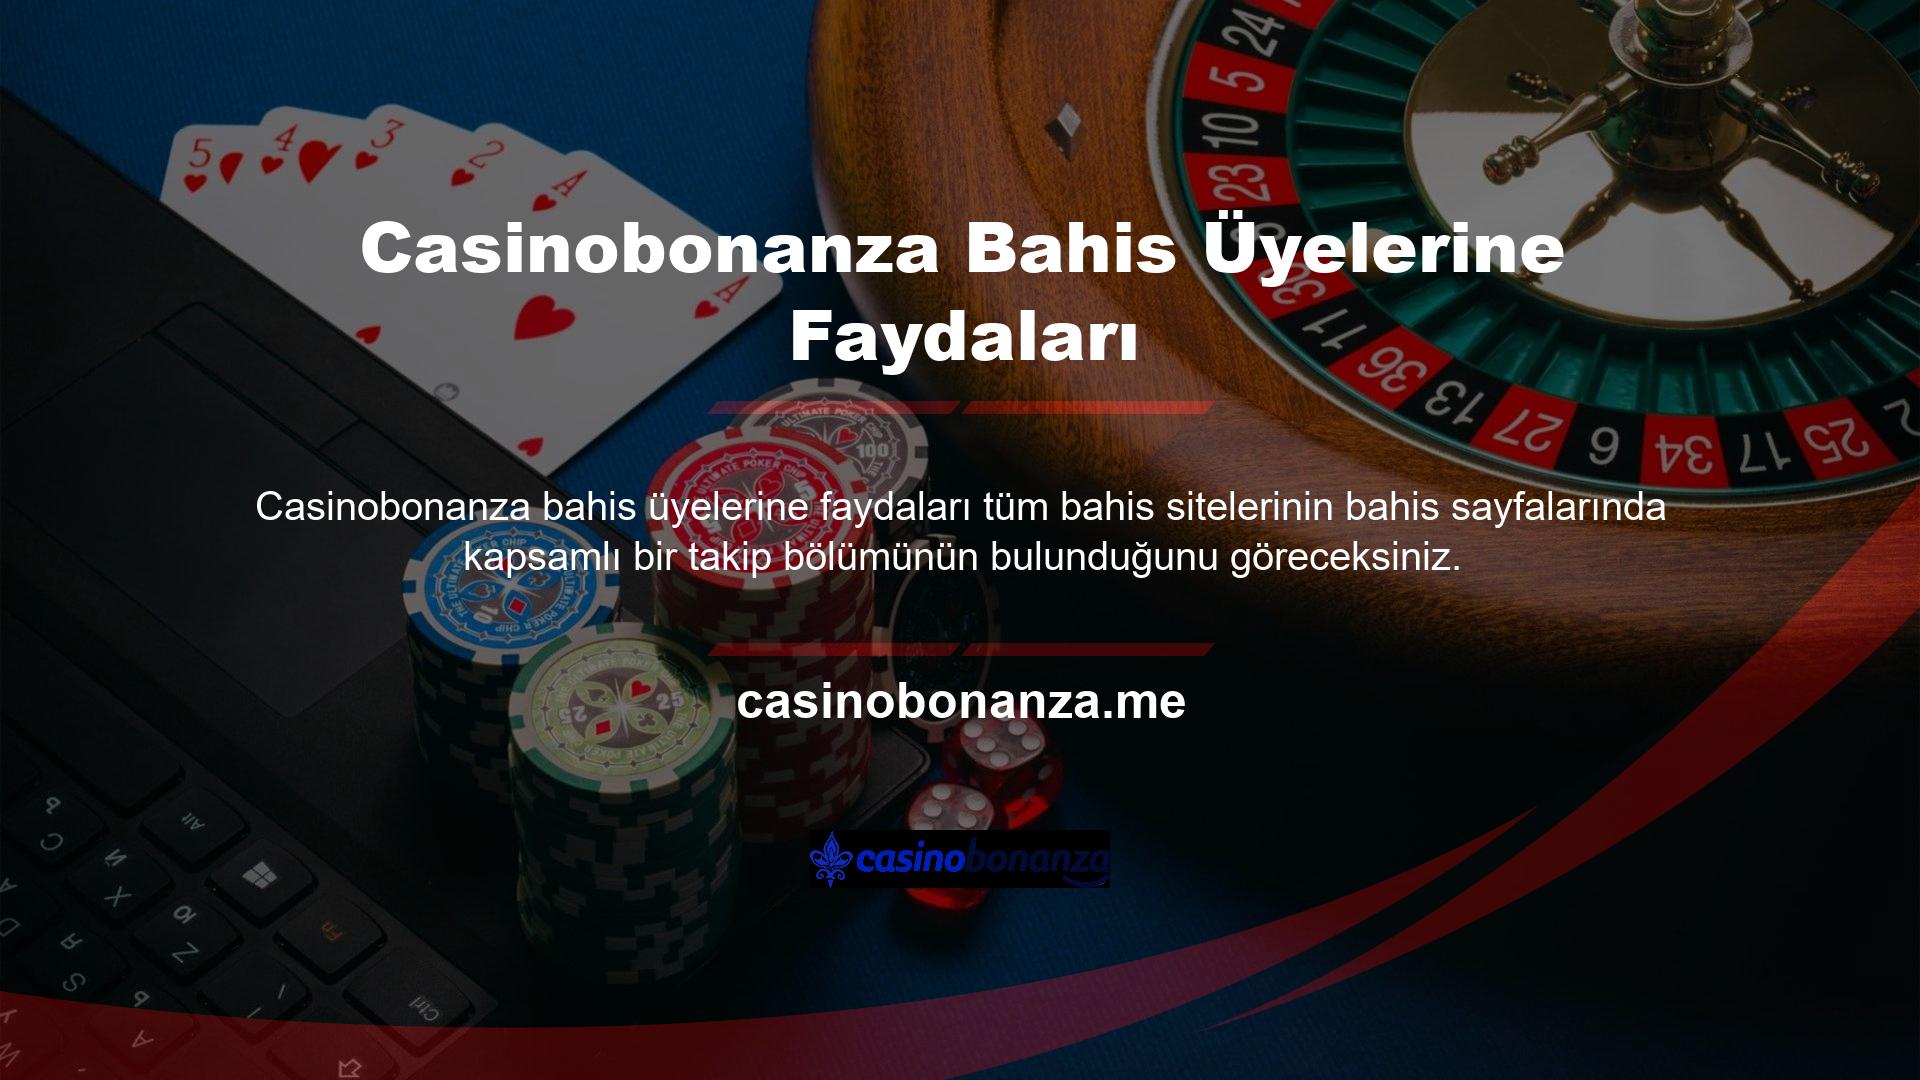 Spor, Canlı, Slot, Casino ve Casinobonanza Bahisleri için üye avantajları